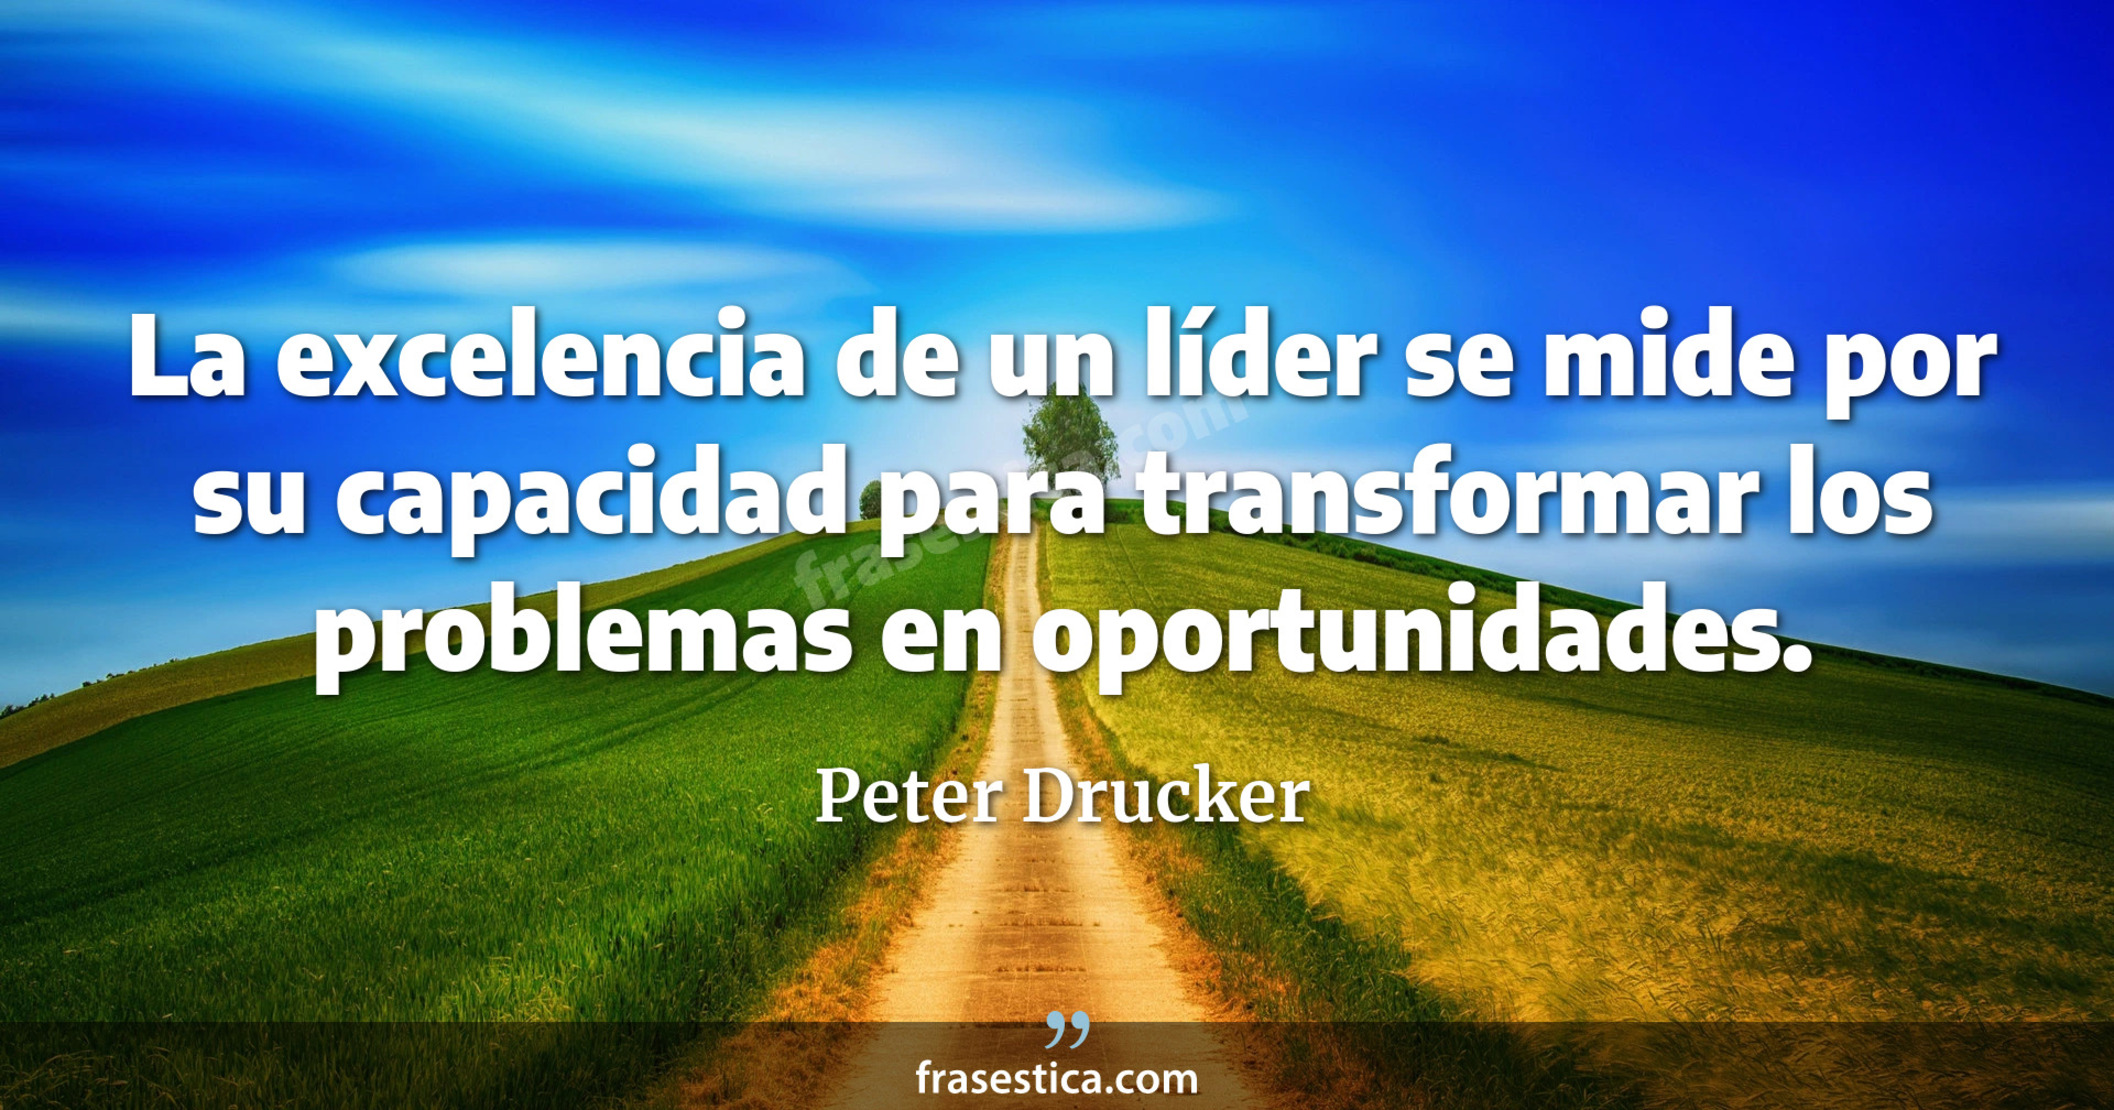 La excelencia de un líder se mide por su capacidad para transformar los problemas en oportunidades. - Peter Drucker